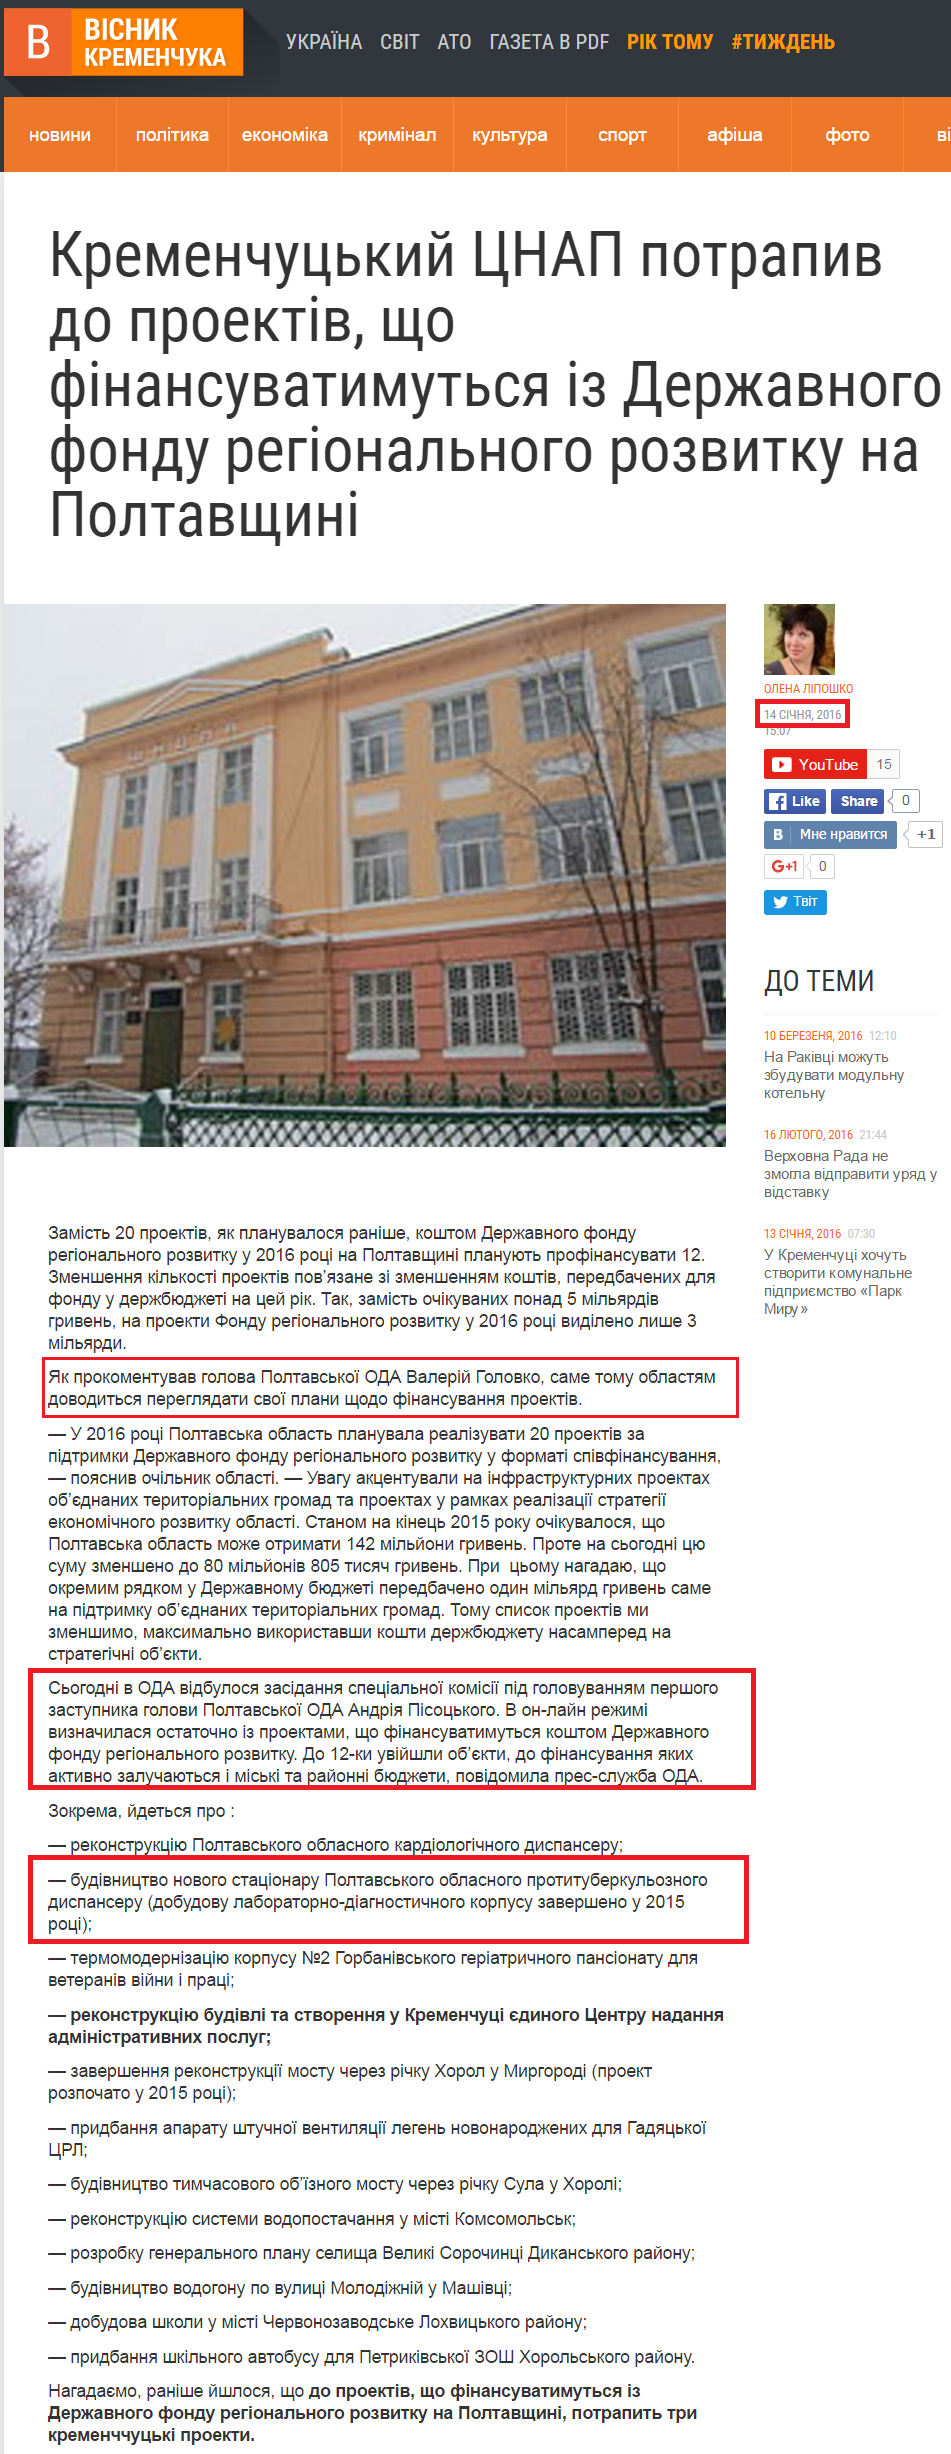 http://vestnik.in.ua/2016/01/14/kremenchutskiy-tsnap-potrapiv-do-proektiv-shho-finansuvatimutsya-iz-derzhavnogo-fondu-regionalnogo-rozvitku-na-poltavshhini/